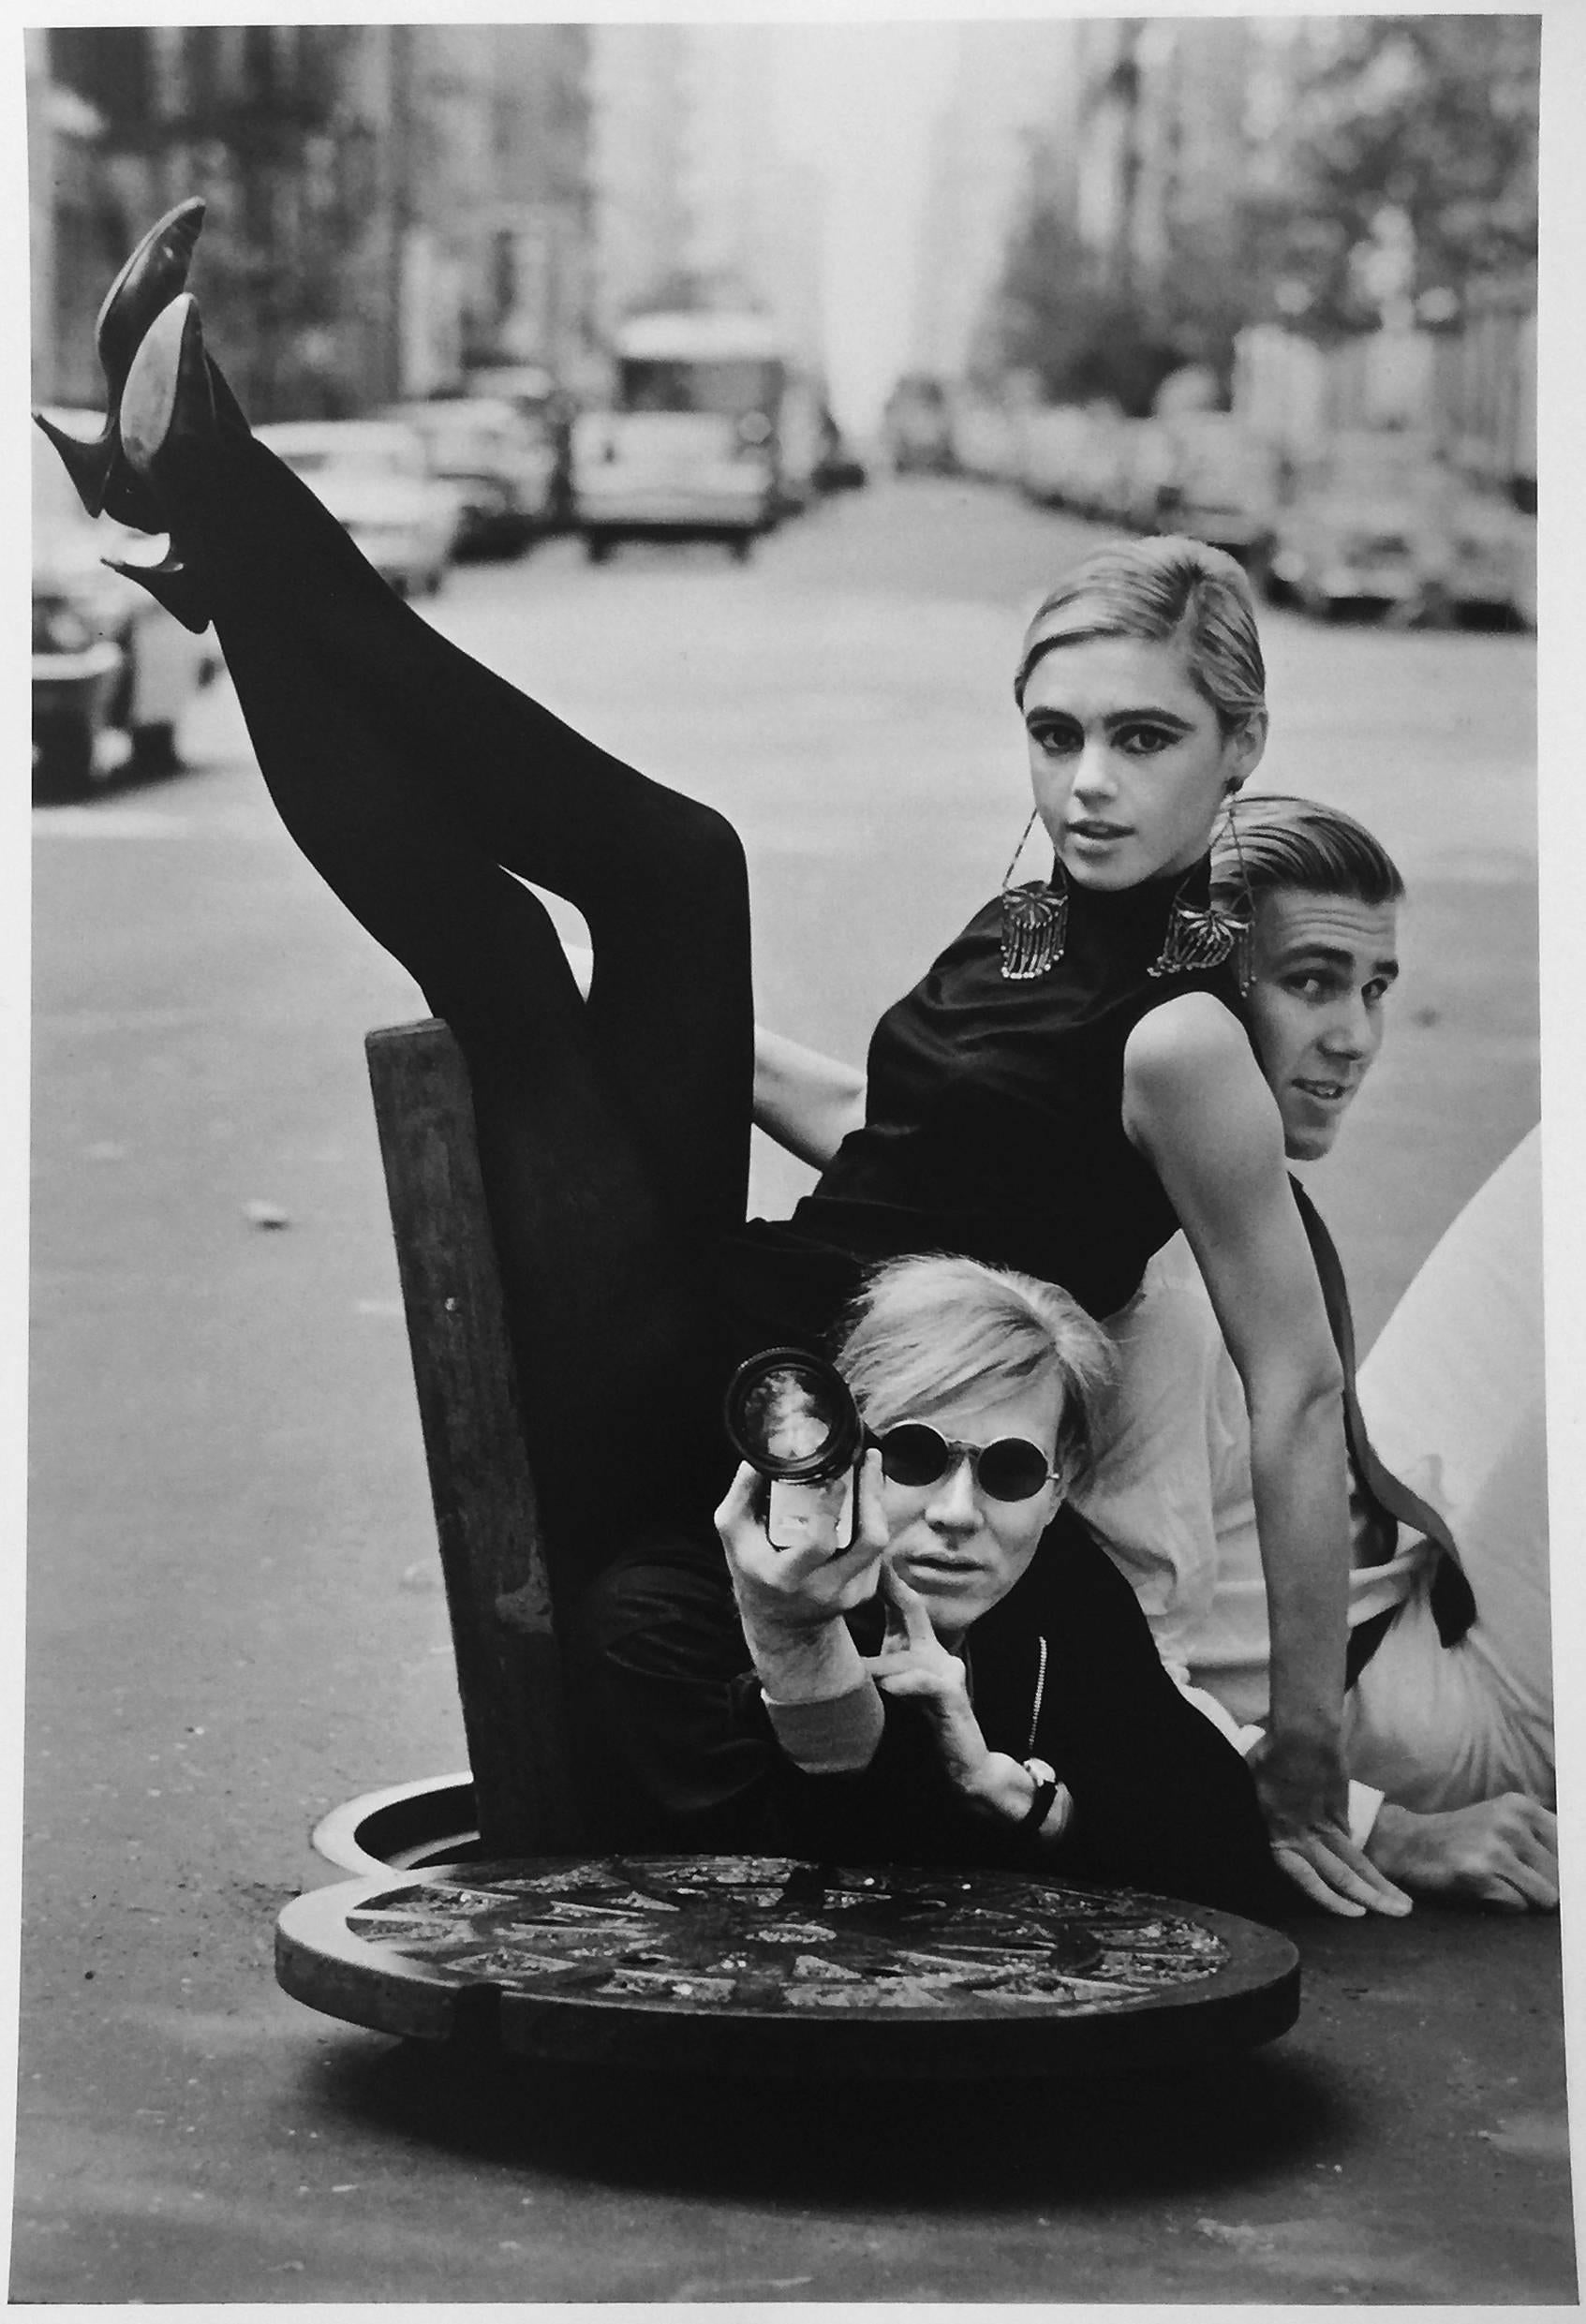 Burt Glinn Portrait Photograph - Andy Warhol, Edie Sedgwick, Chuck Wein, Photograph of Pop Art Superstars 1960s 